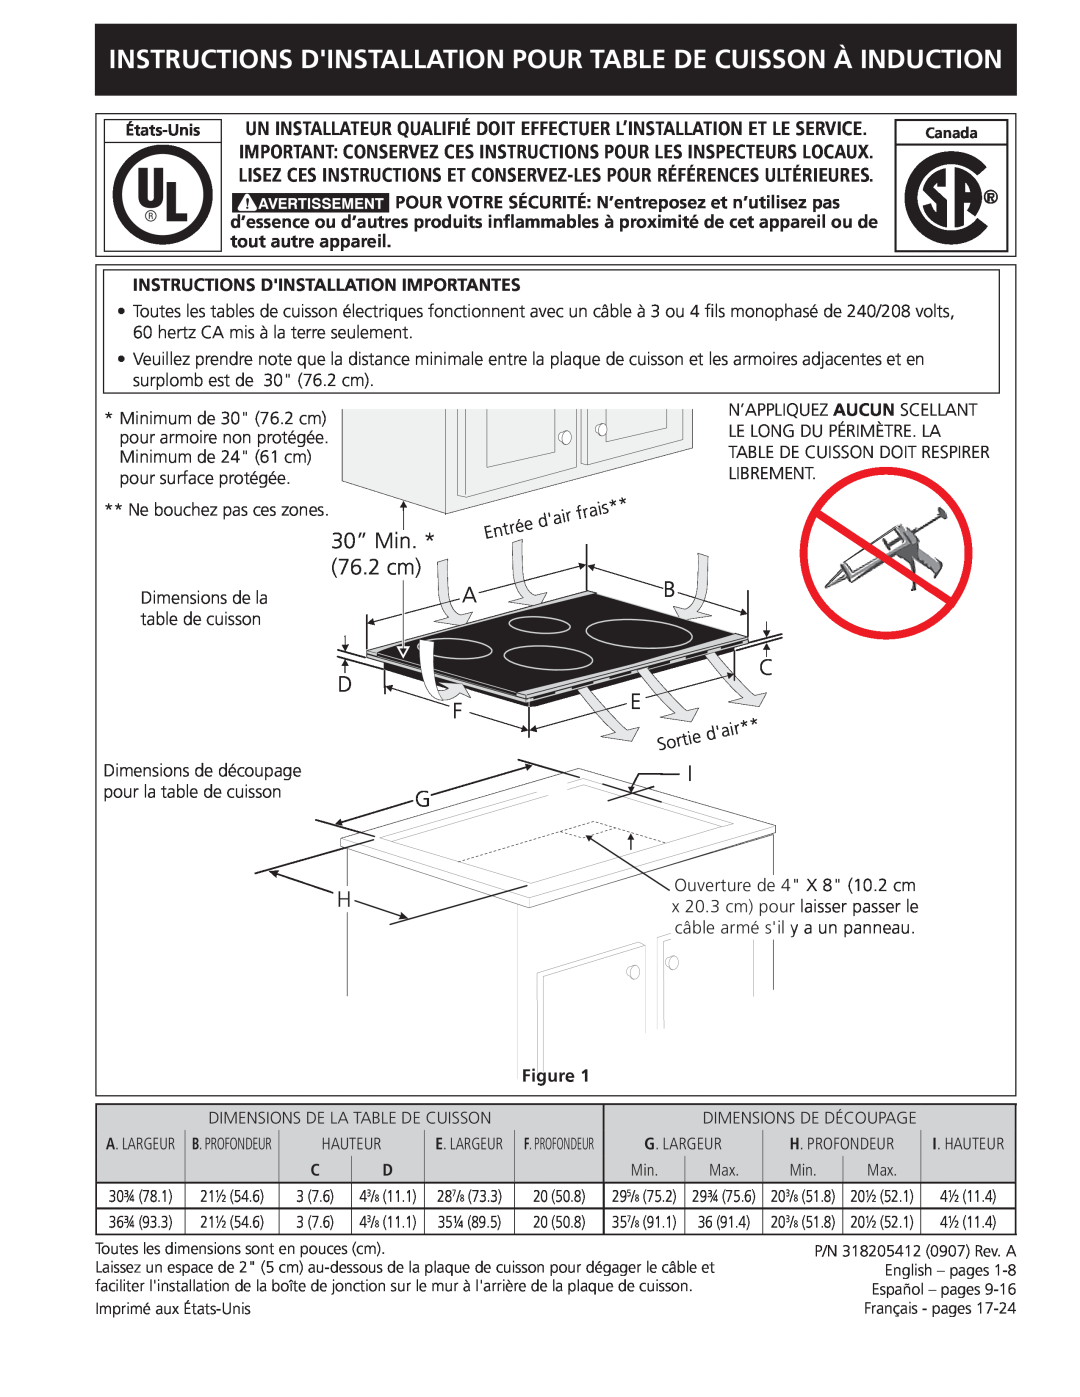 Frigidaire 318205412 Instructions Dinstallation Pour Table De Cuisson À Induction, 30” Min. * 76.2 cm 